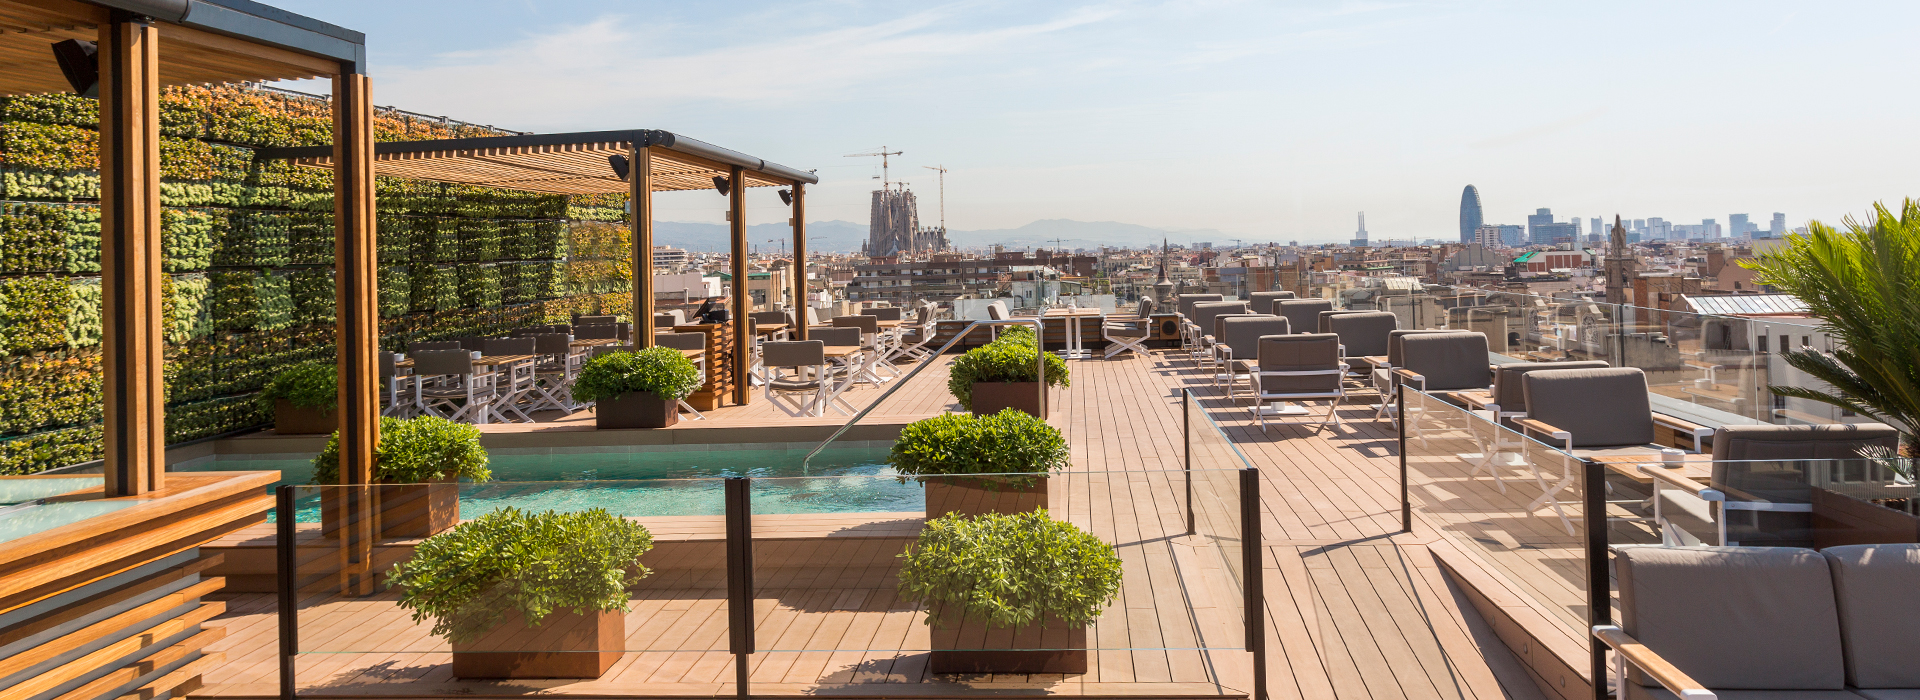 Le rooftop du Majestic incarne la Dolce Vitae et offre une vue splendide sur Barcelone (PB)